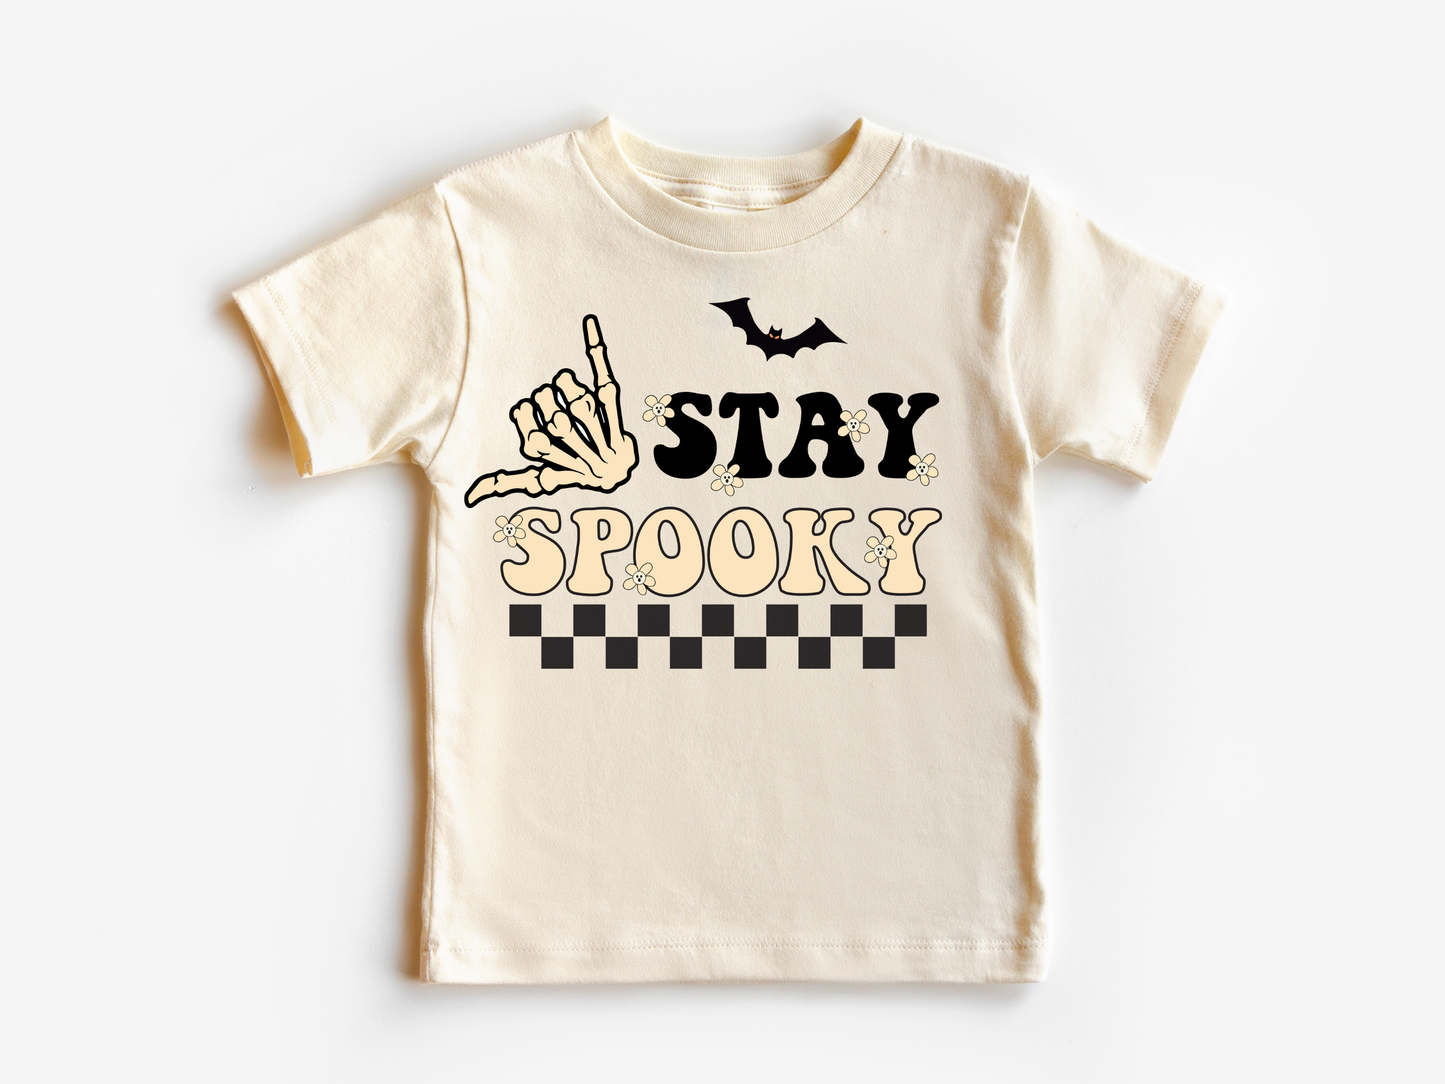 Stay Spooky Tee